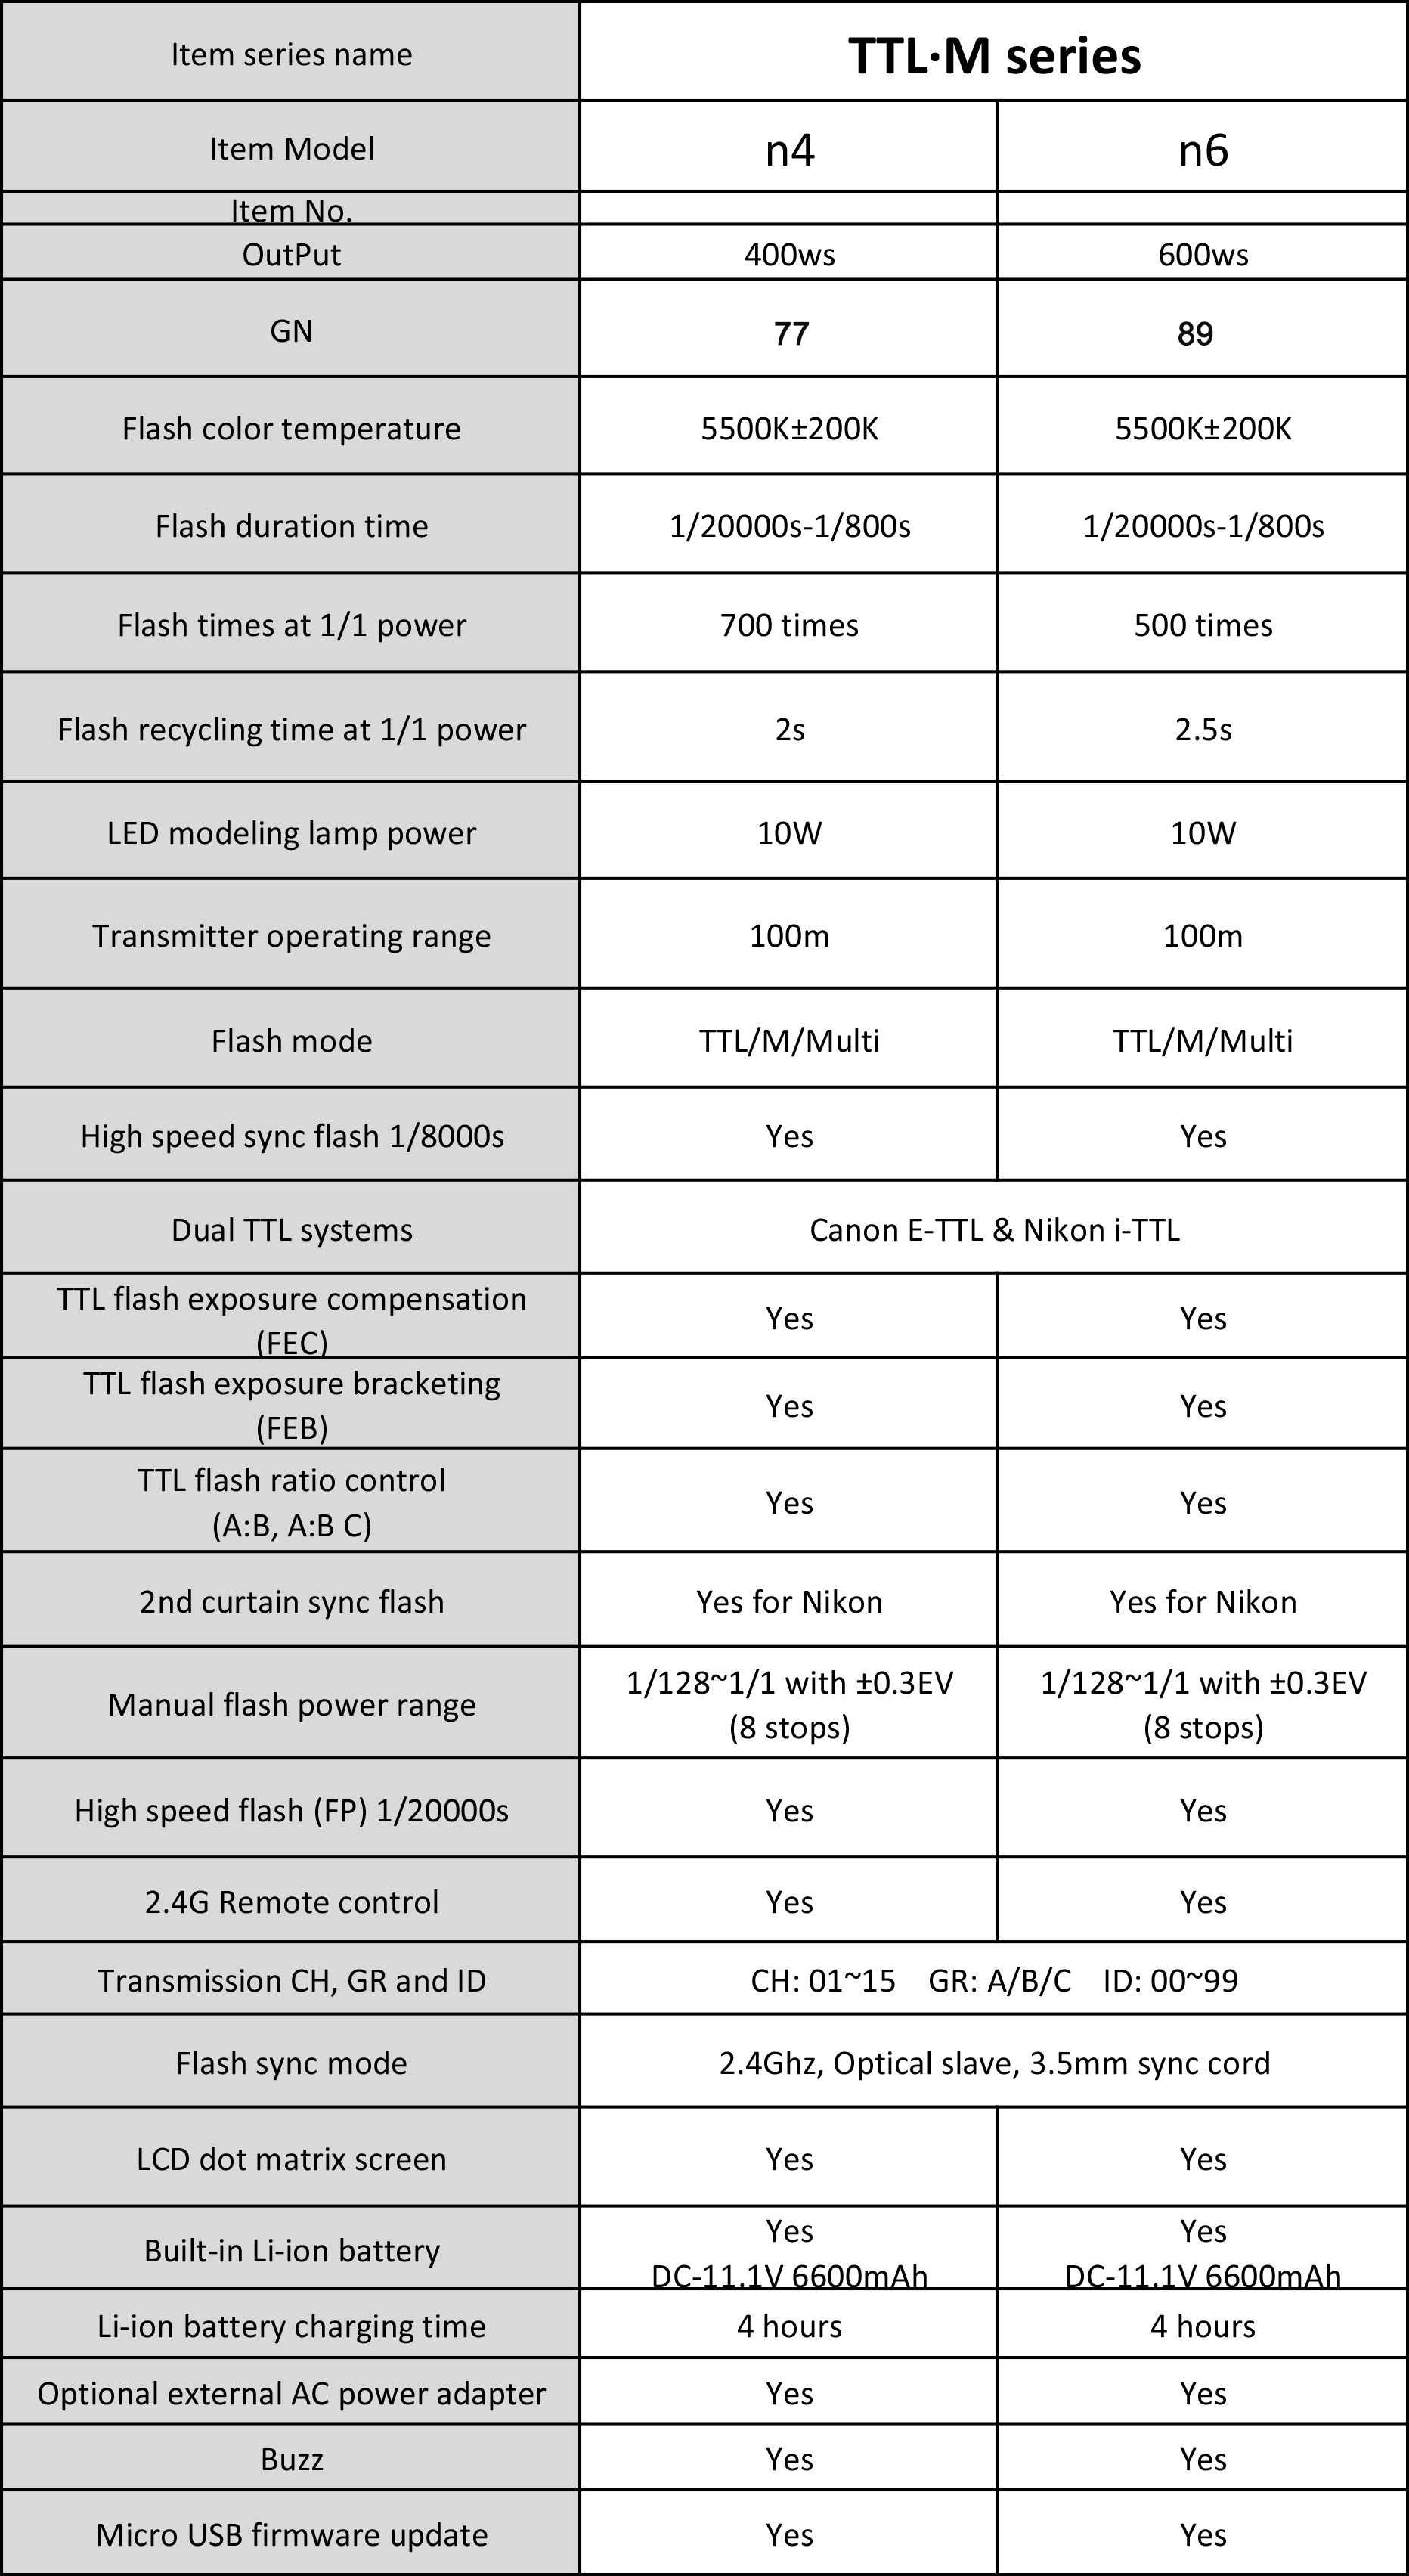 Аккумуляторный моноблок NiceFoto N4 TTL-M + синхронизатор TX-N02 (TTL режим, 400 Дж. для Nikon)